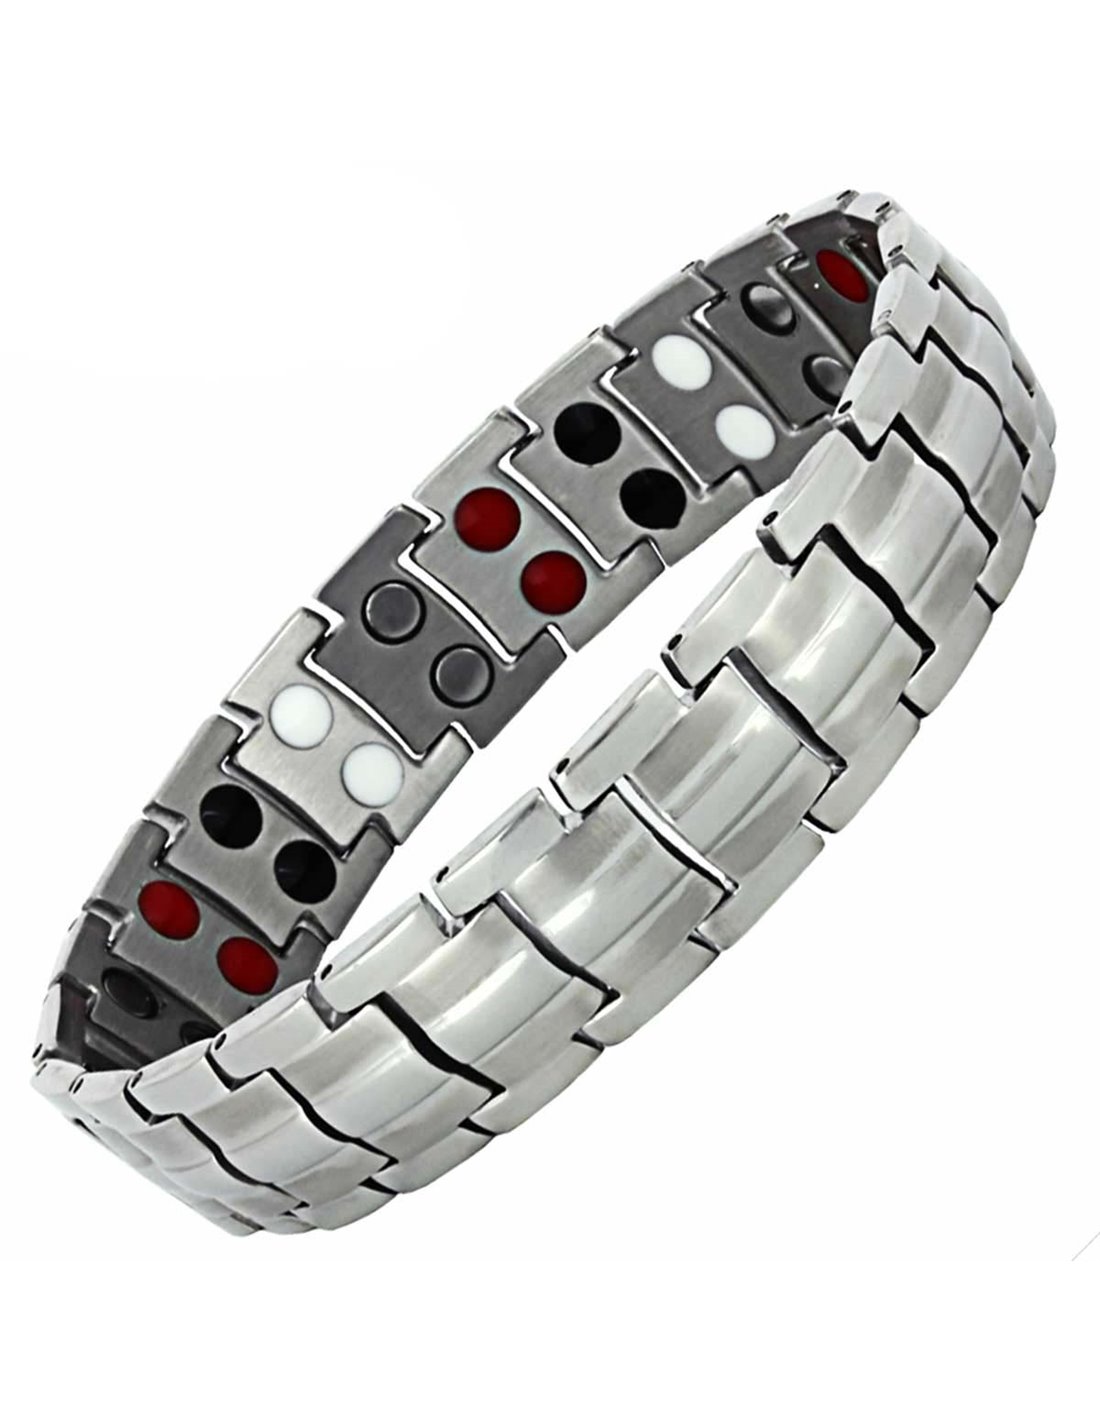 IYOKA Bracelet Magnétique Bracelet Artisan avec 10 Aimants Puissants Bracelet Pour Visserie de Fixation Convient Aux électriciens et Artisans 